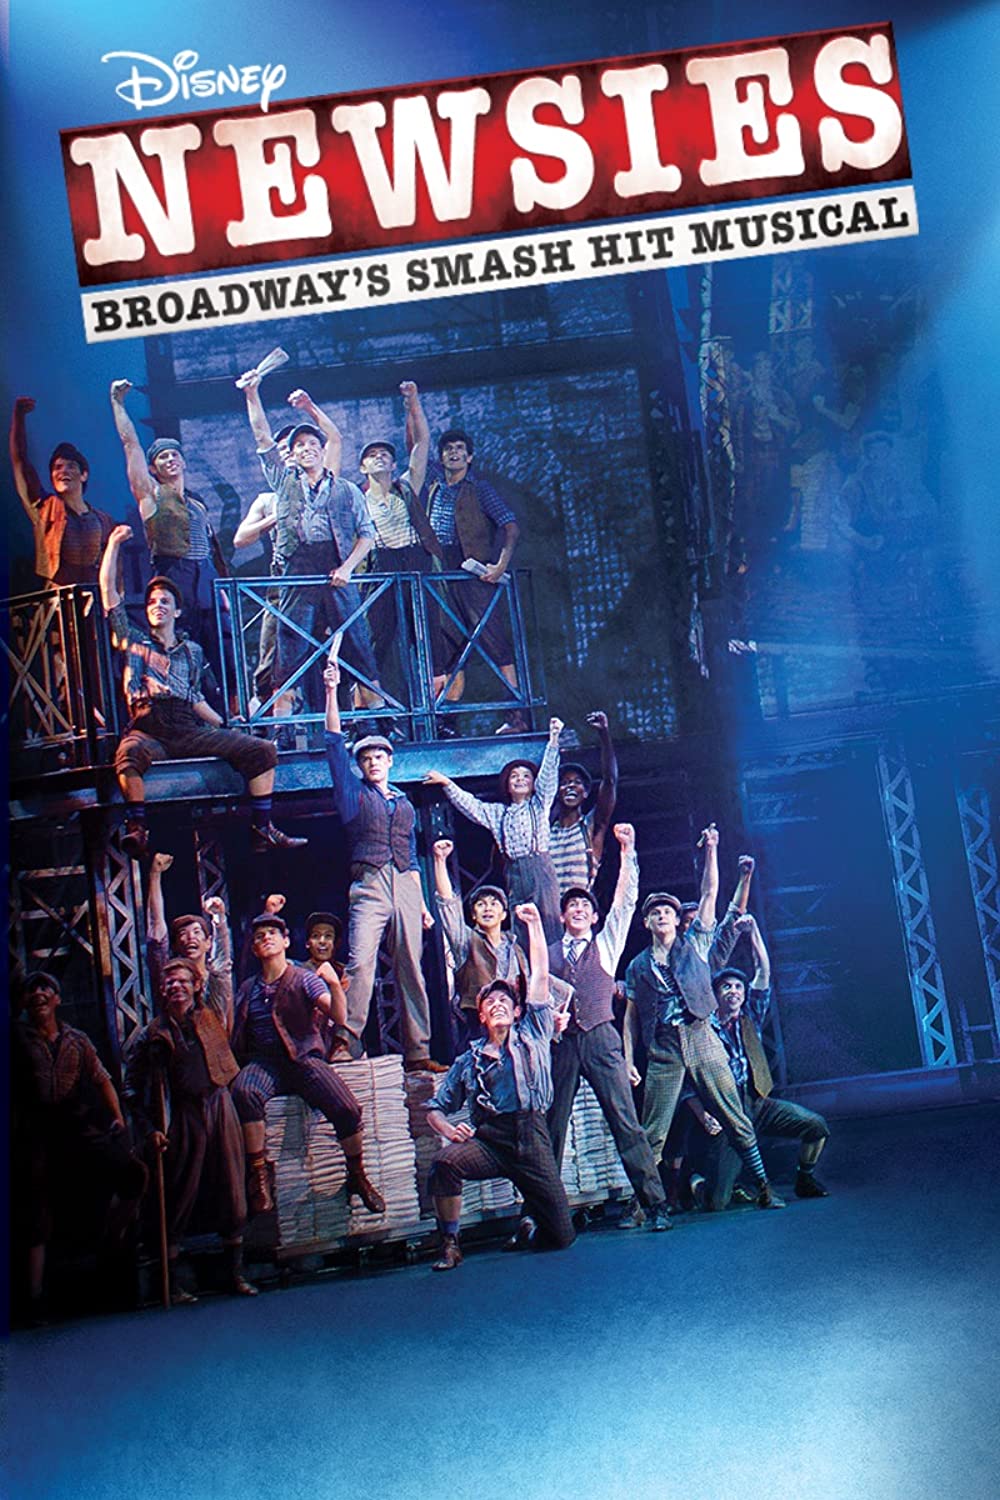 Filmbeschreibung zu Newsies: The Broadway Musical